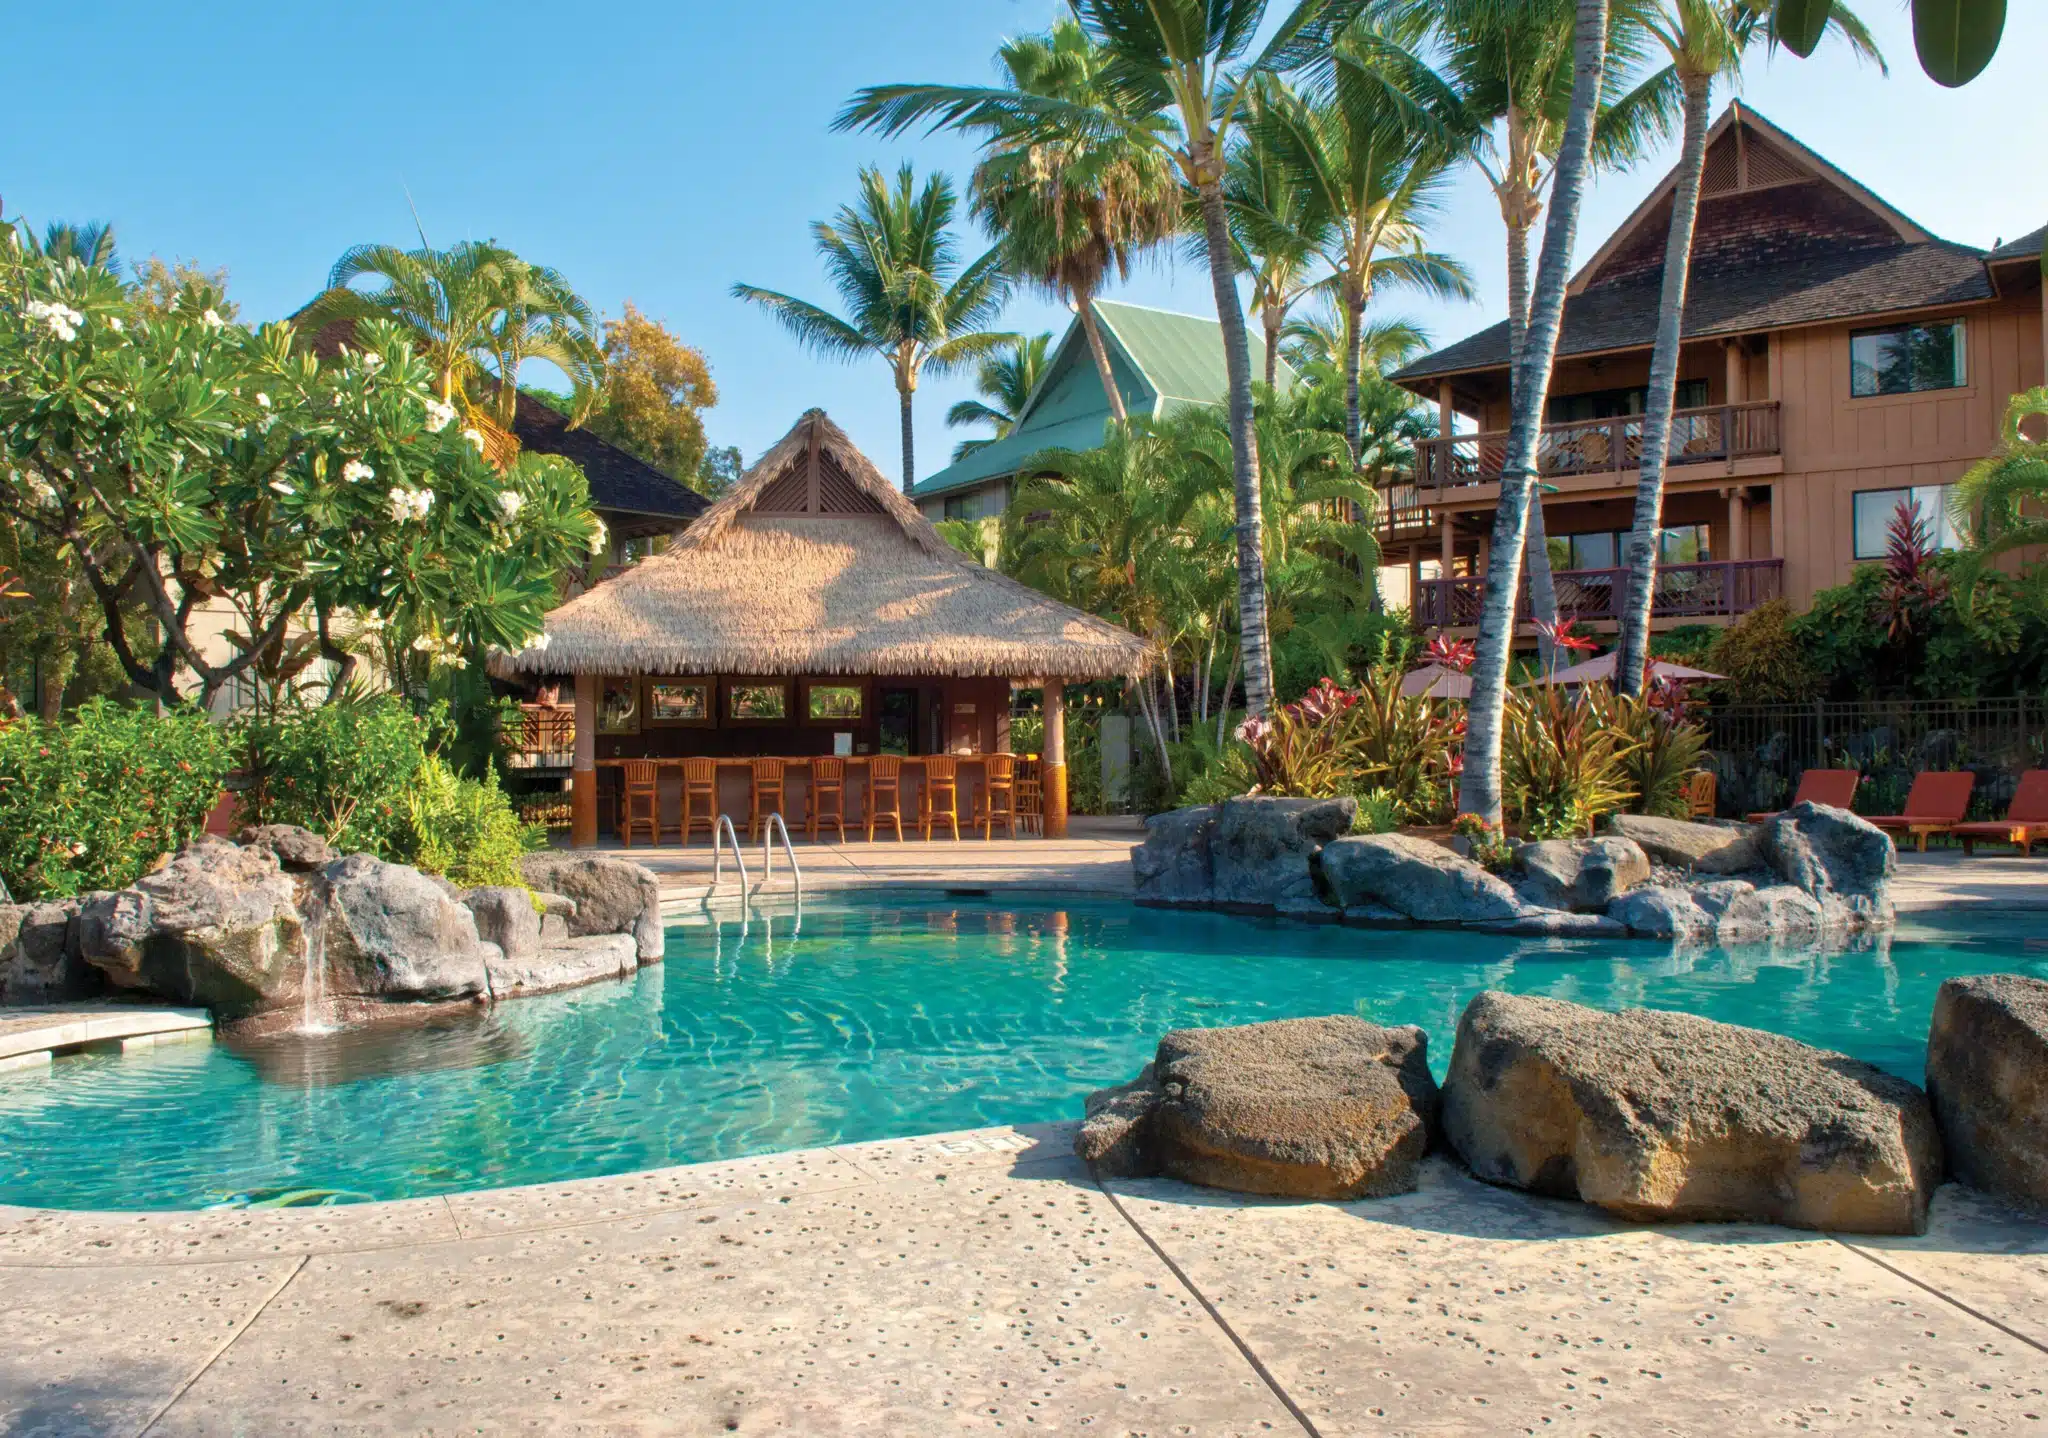 Club Wyndham Kona Hawaiian Resort is a Hotel located in the city of Kailua-Kona on Big Island, Hawaii